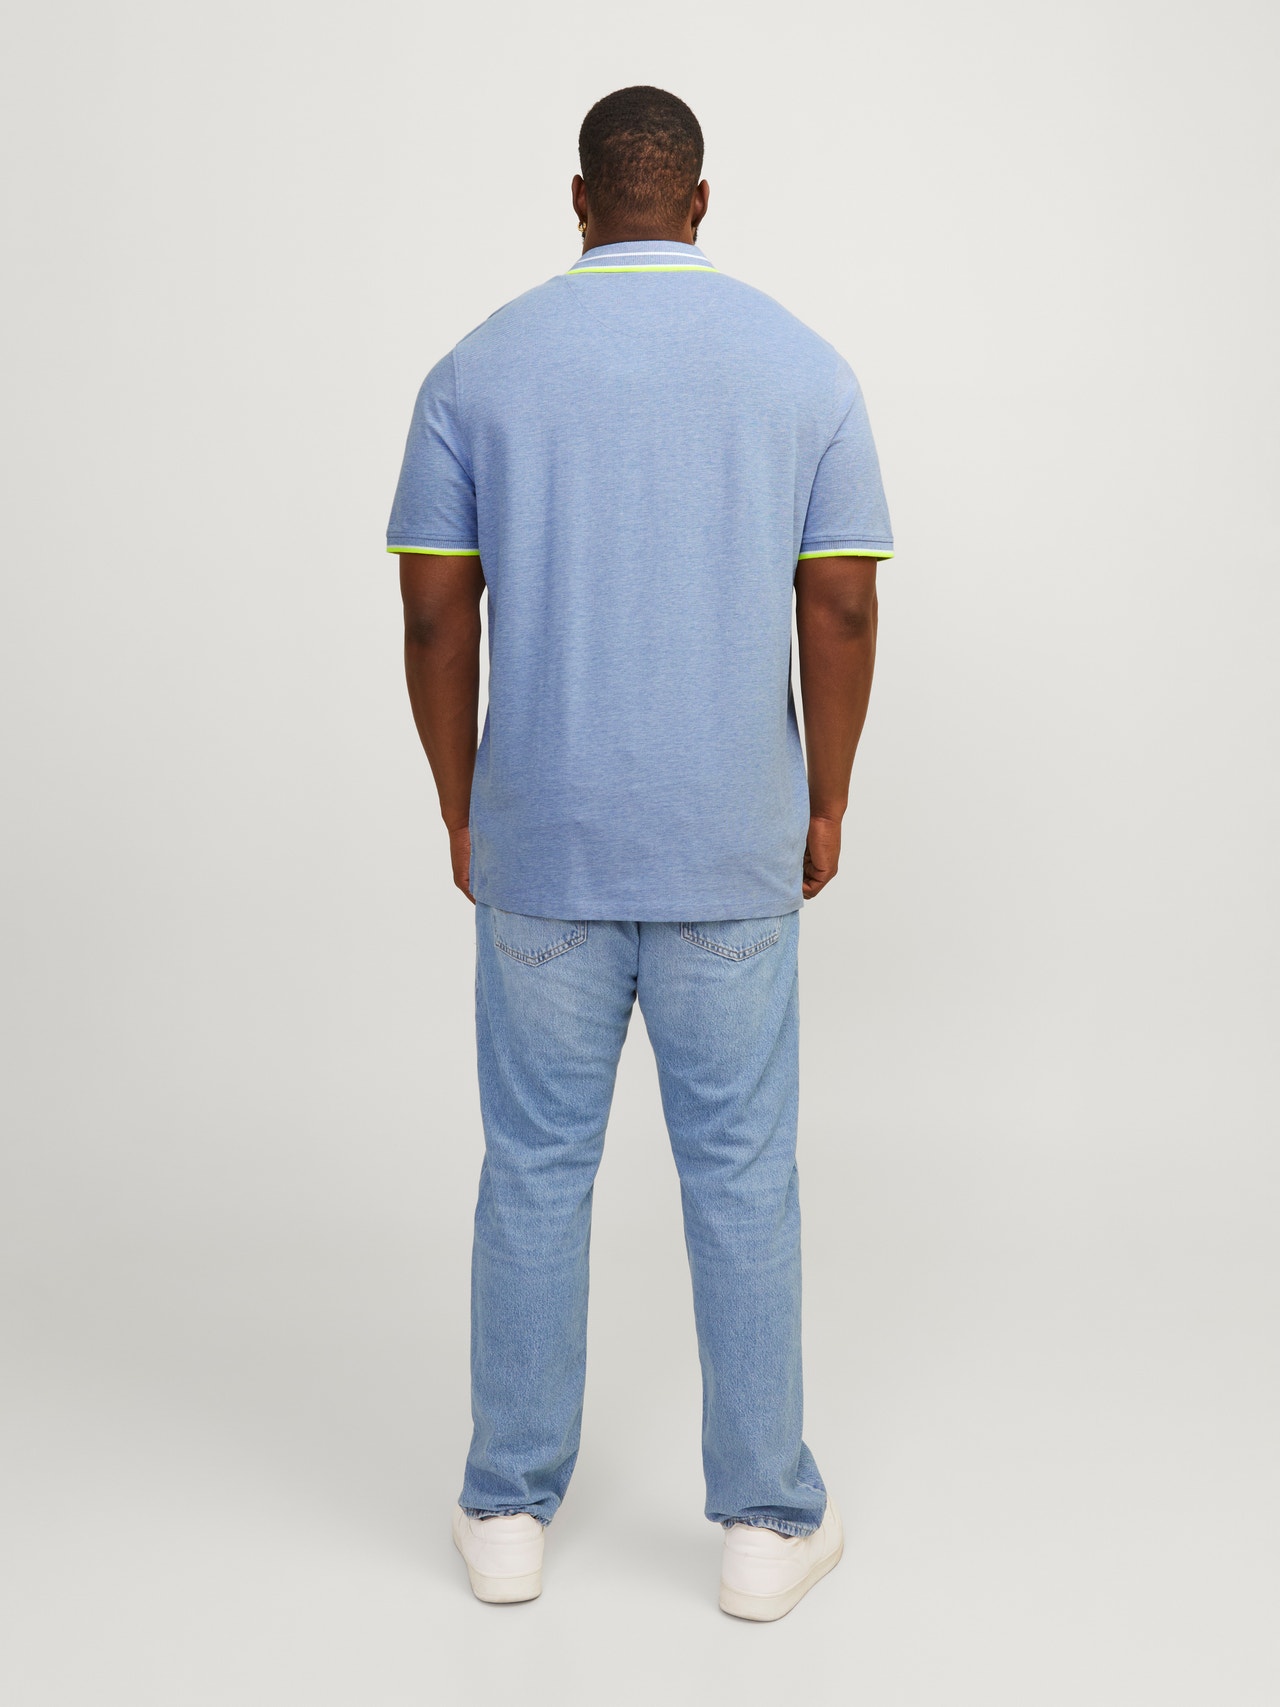 Jack & Jones Plus Size Plain T-shirt -Bright Cobalt - 12143859